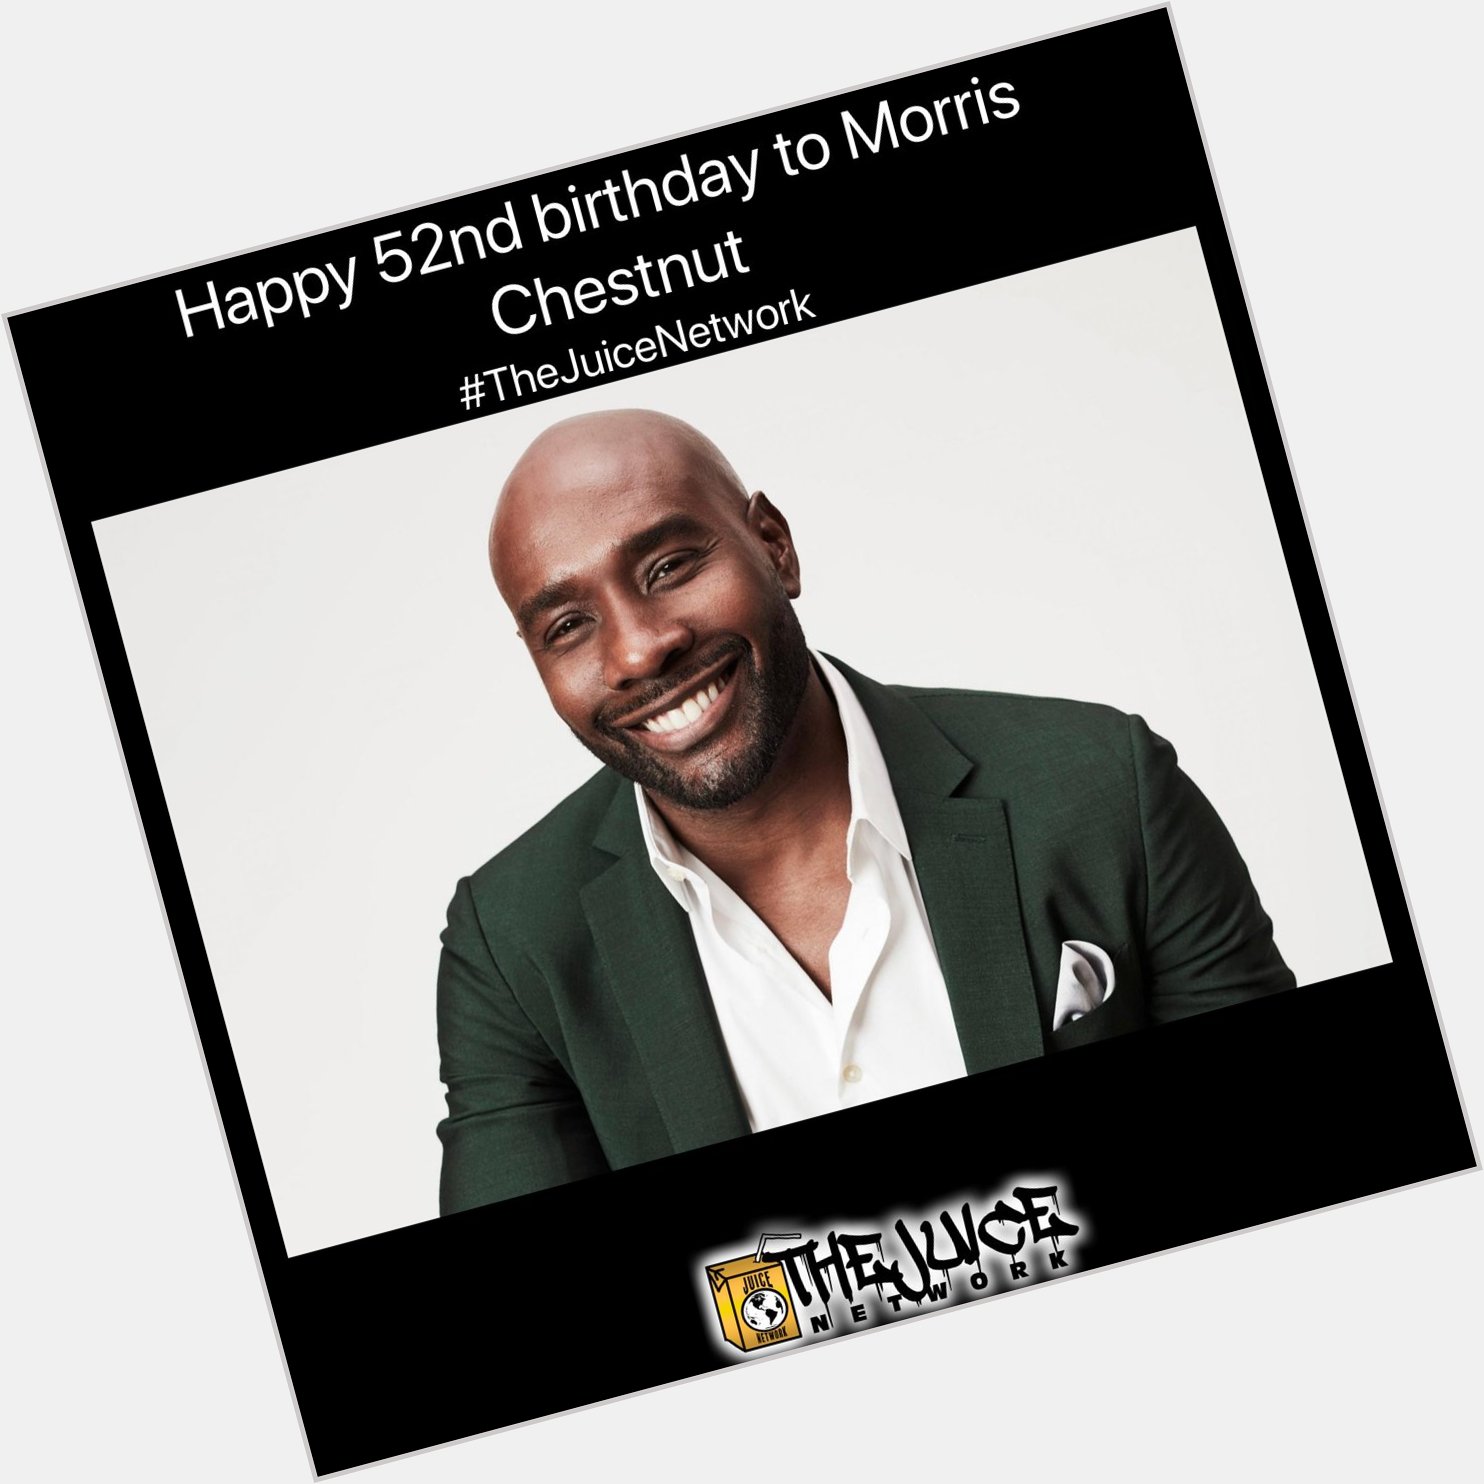 Happy 52nd birthday to Morris Chestnut!    